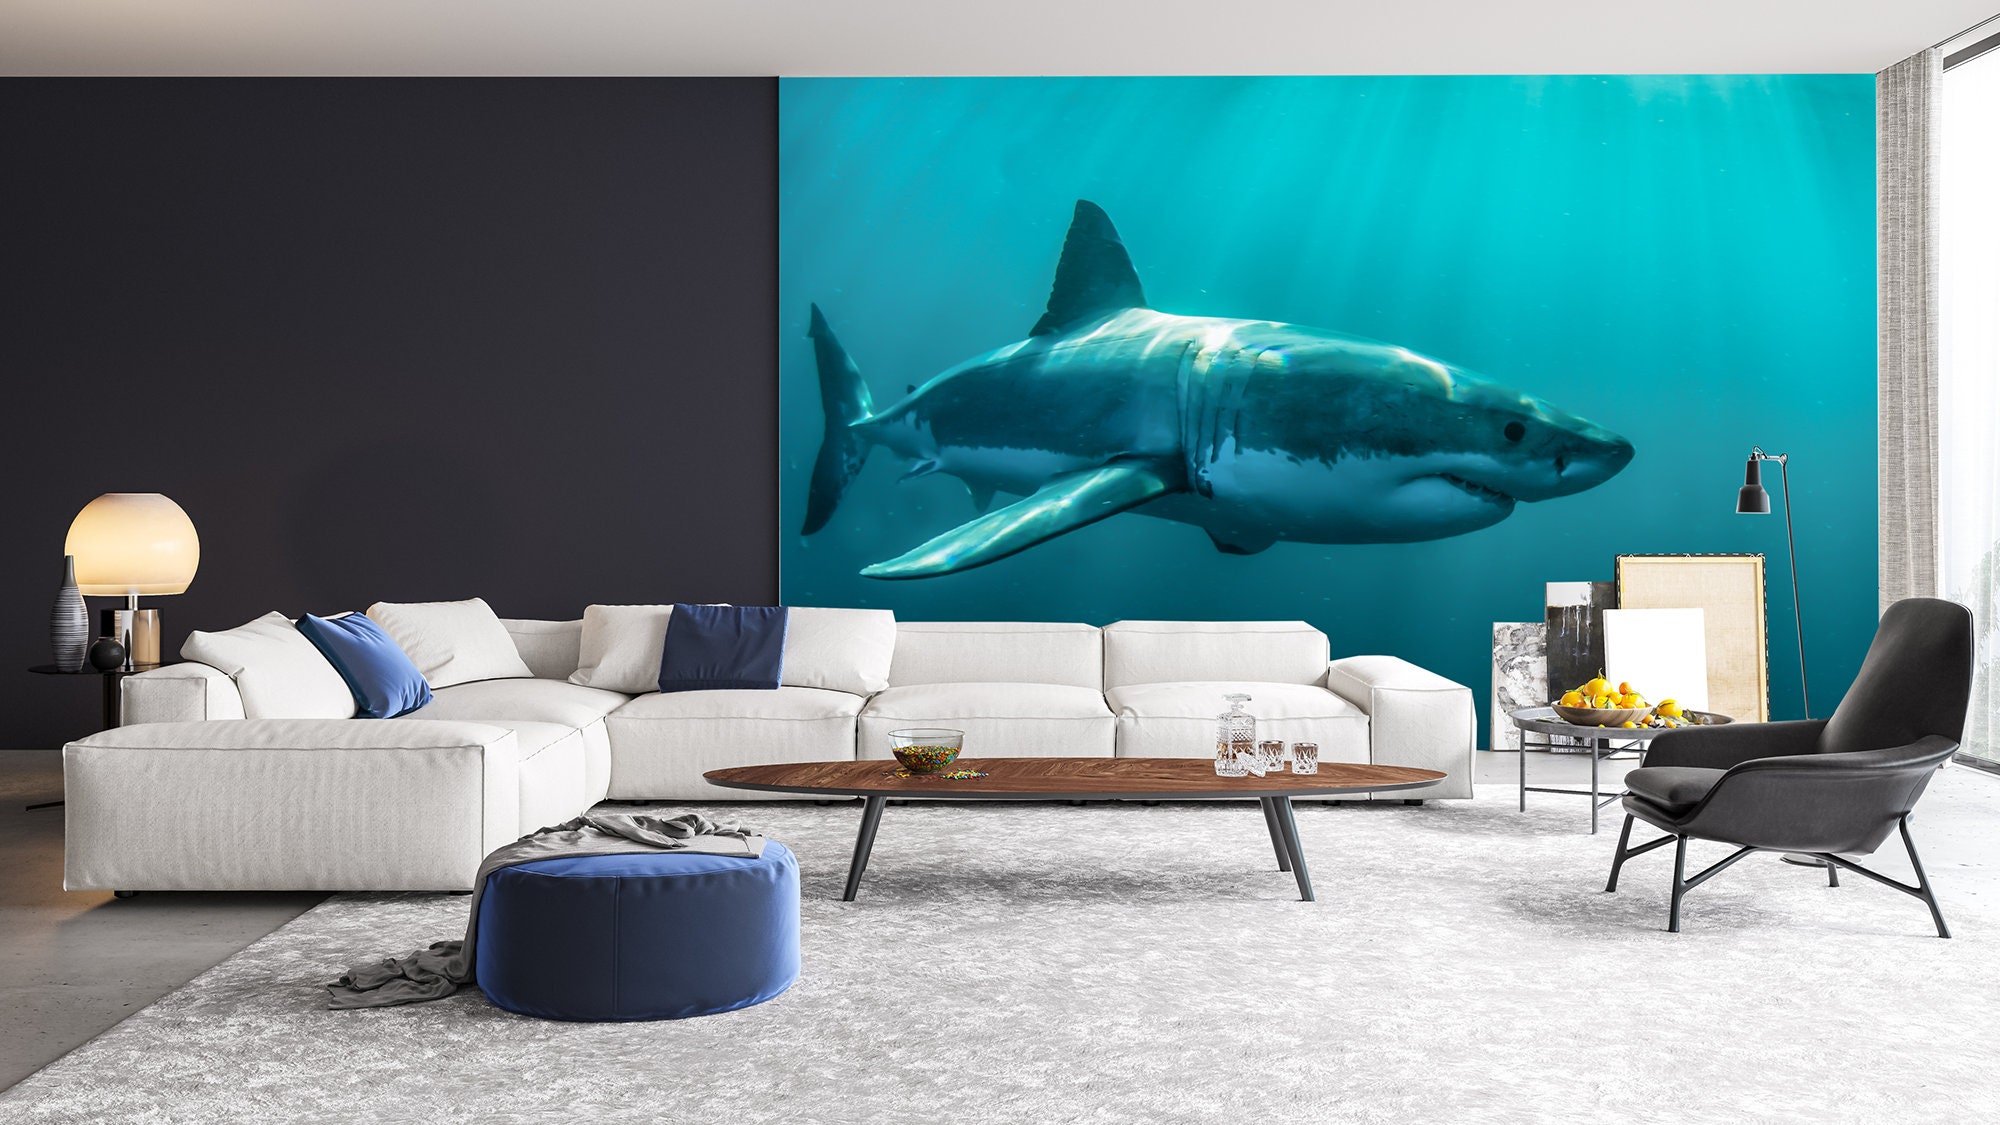 Shark Wallpaper Mural Sea Life Wallpaper Self-adhesive - Etsy